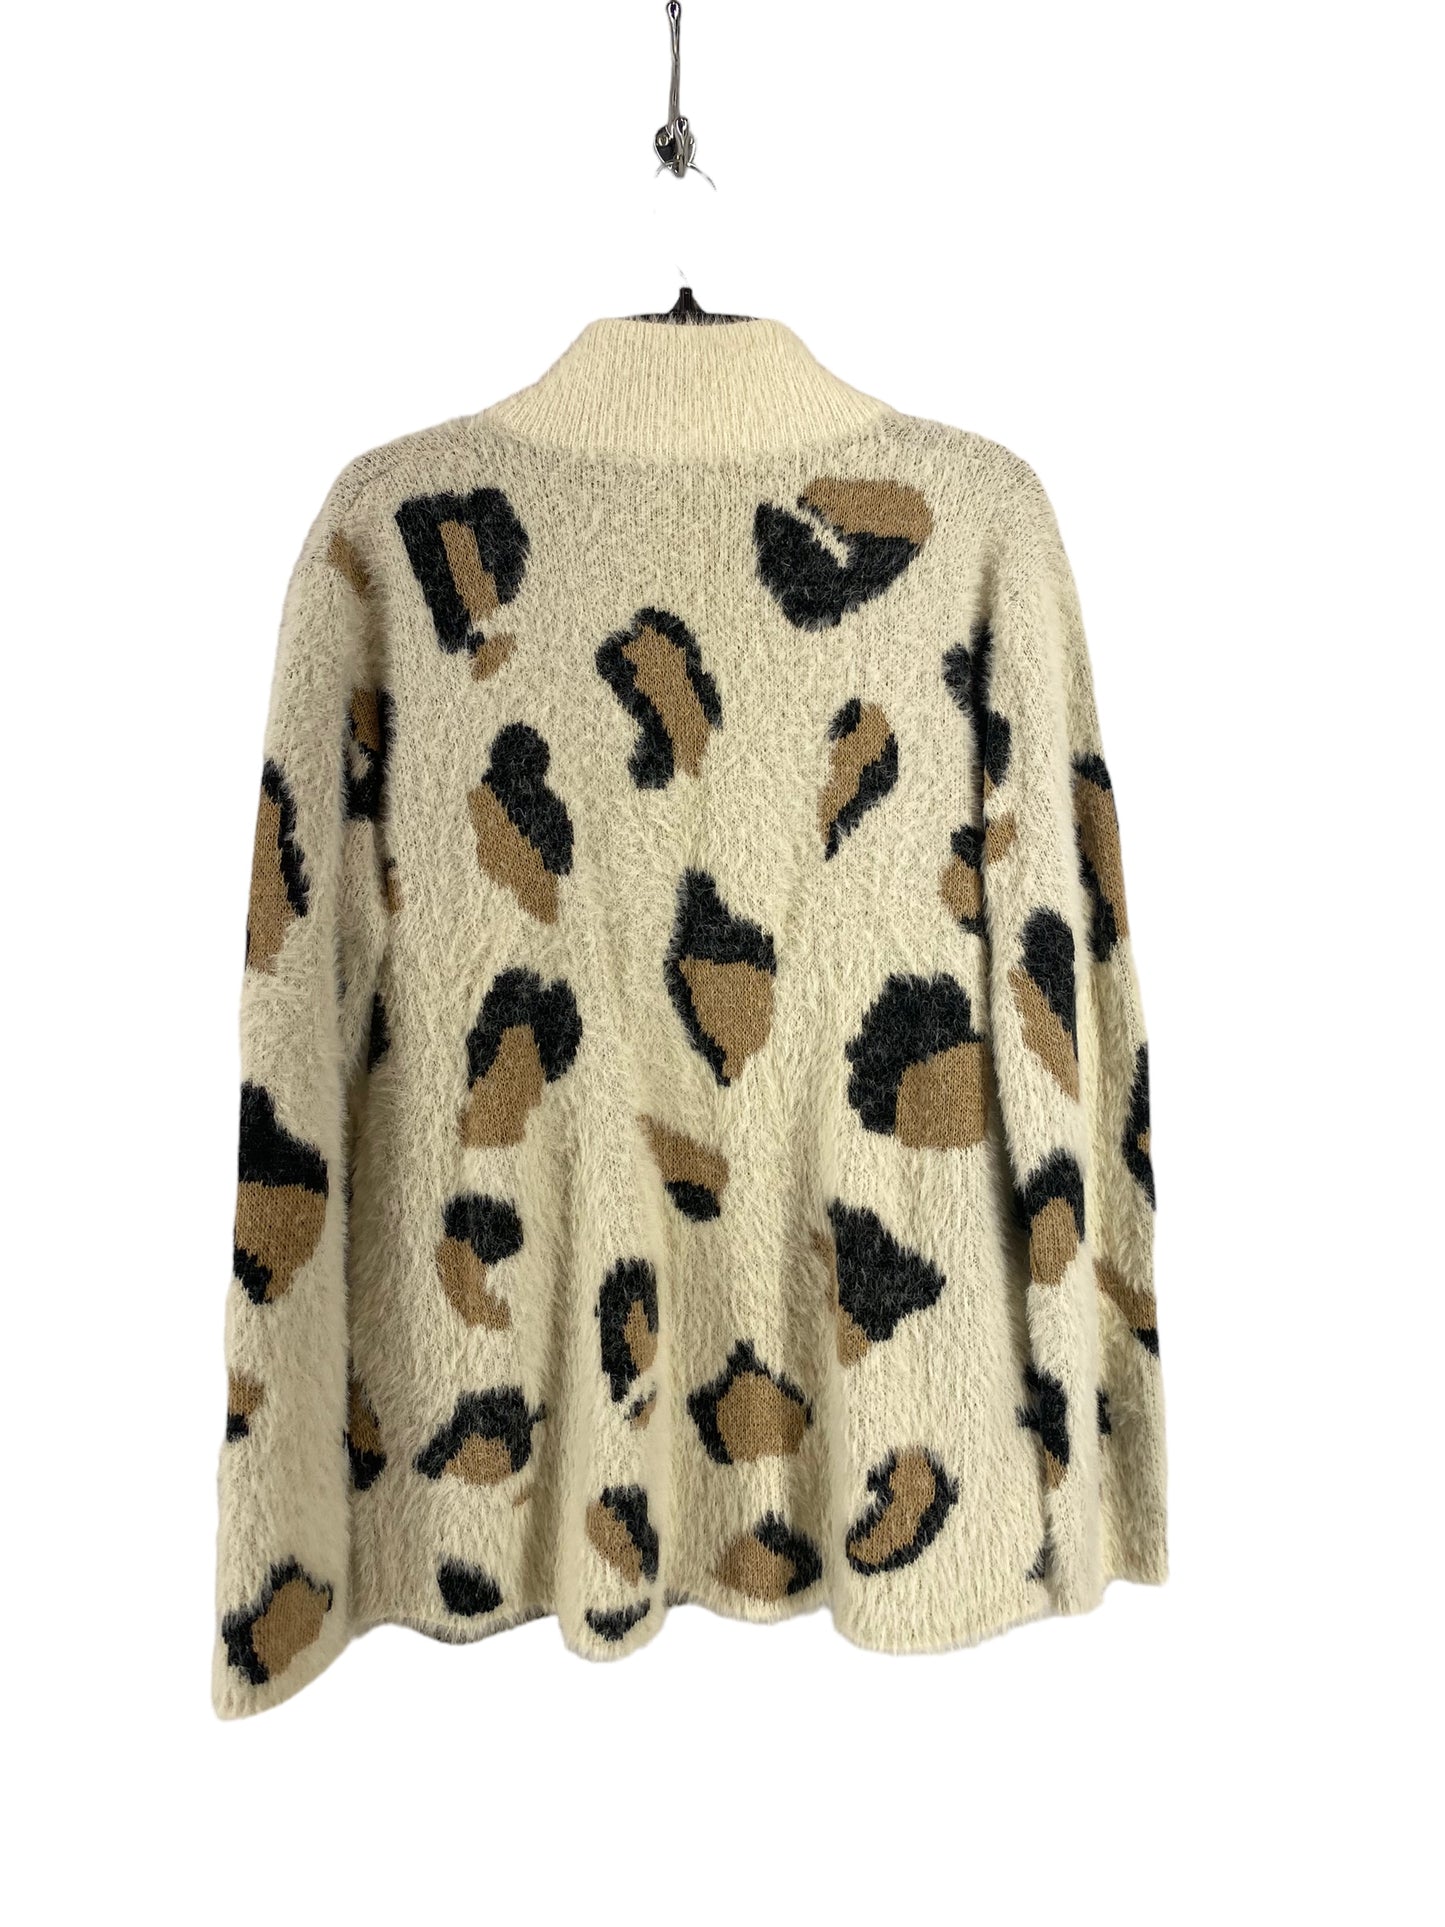 Jacket Faux Fur & Sherpa By Jodifl  Size: L